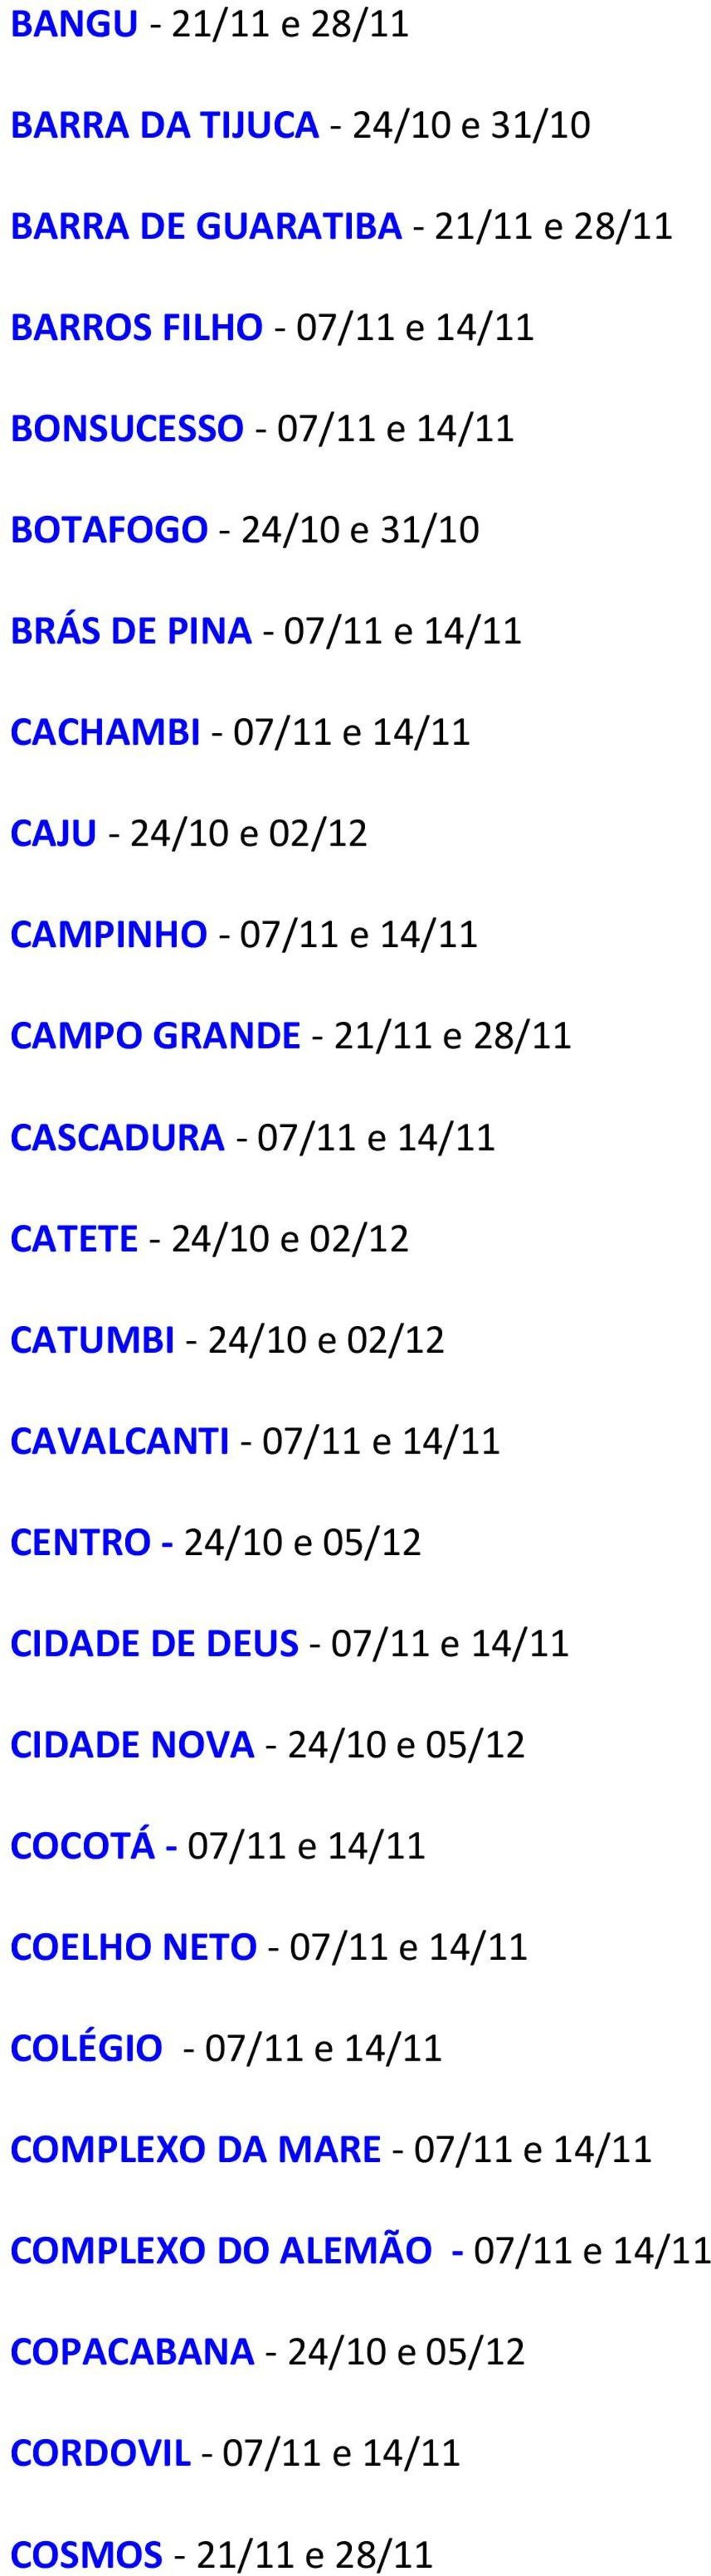 CATUMBI - 24/10 e 02/12 CAVALCANTI - 07/11 e 14/11 CENTRO - 24/10 e 05/12 CIDADE DE DEUS - 07/11 e 14/11 CIDADE NOVA - 24/10 e 05/12 COCOTÁ - 07/11 e 14/11 COELHO NETO -